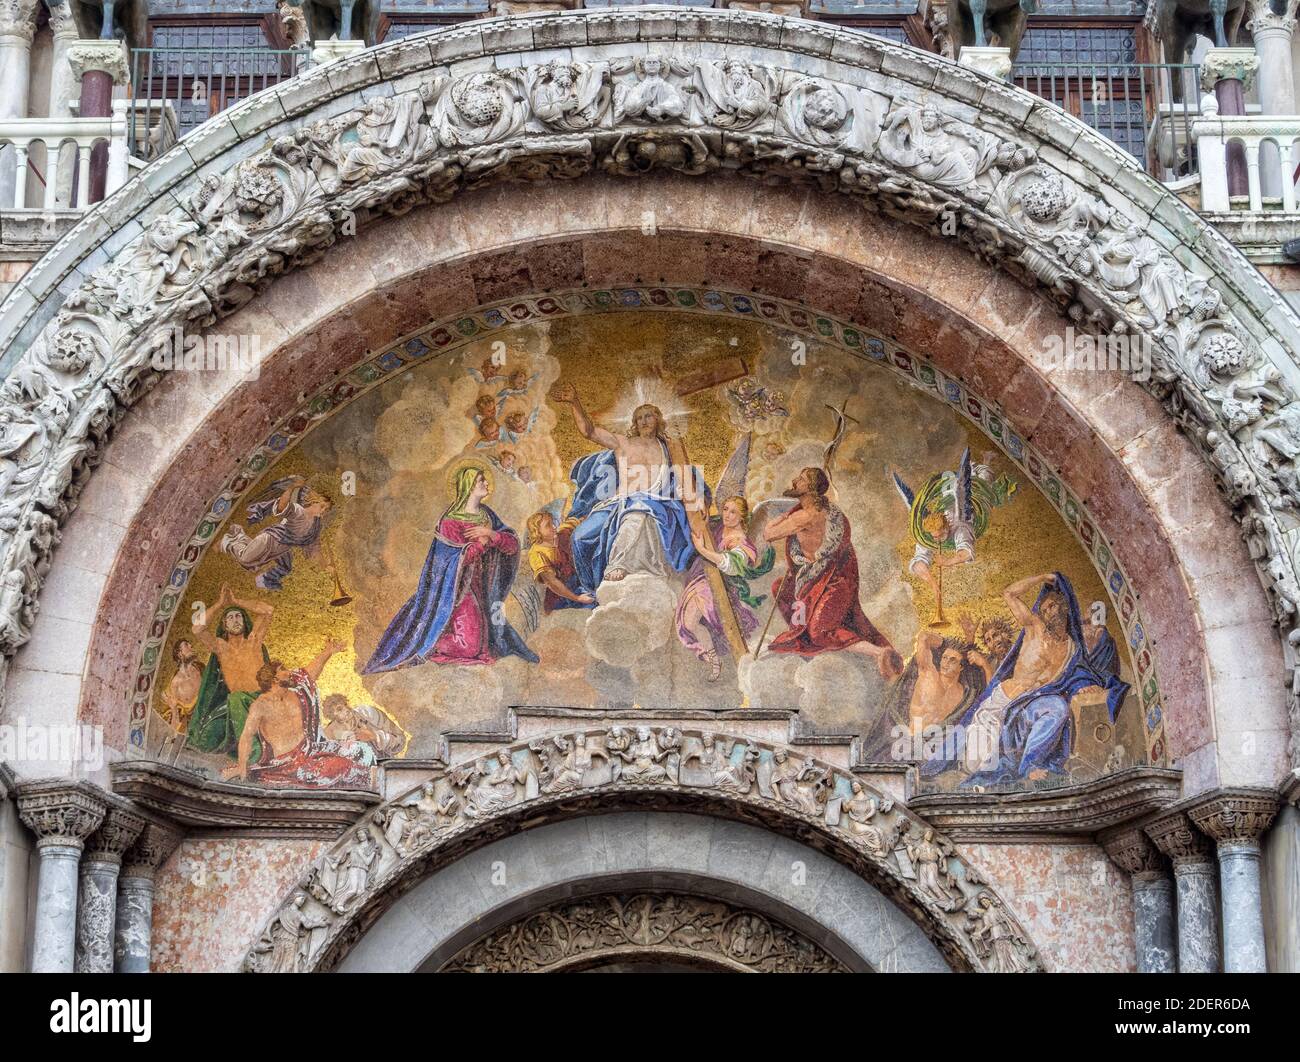 Il mosaico dorato del Giudizio universale sotto il timpano ornato e l'archivolto del portale principale della Basilica di San Marco - Venezia, Veneto, Italia Foto Stock